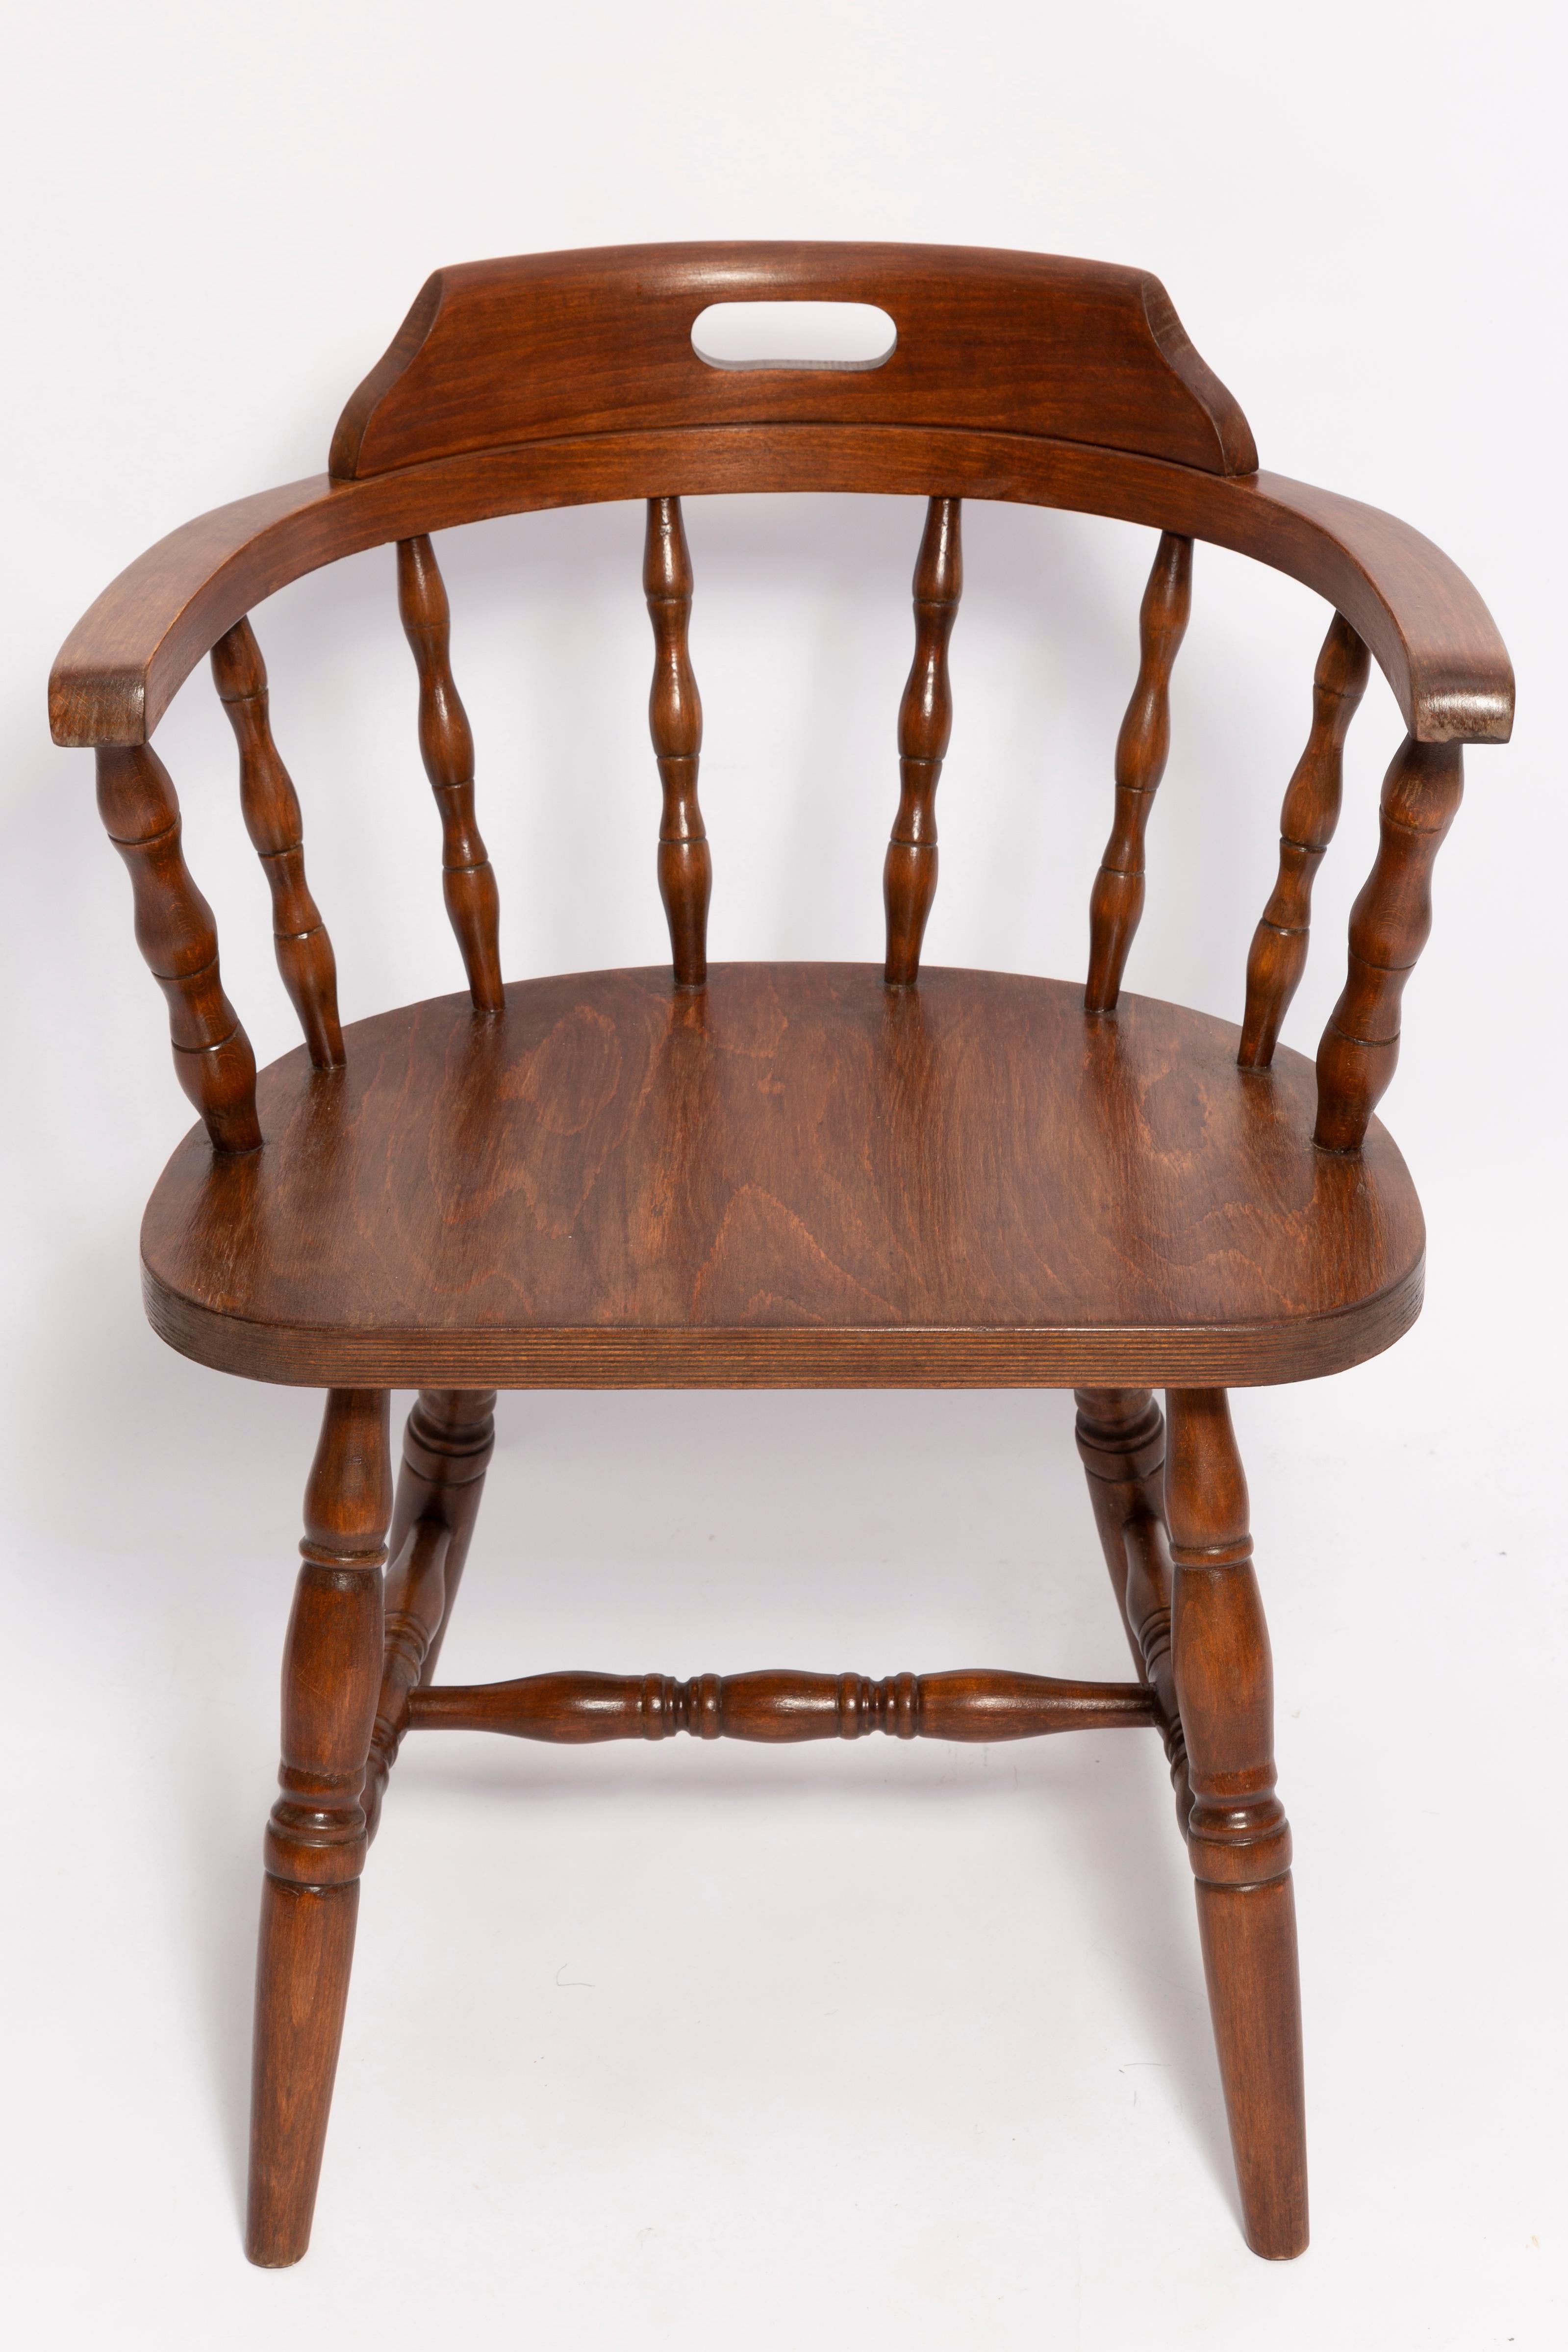 Chaise conçue par le prof. Rajmund Halas. Elle s'appelle Bonanza Chair. 

Fabriqué en bois de hêtre. La chaise est après une rénovation complète, les boiseries ont été rafraîchies. 

La chaise est stable et très galbée. 

La chaise a été